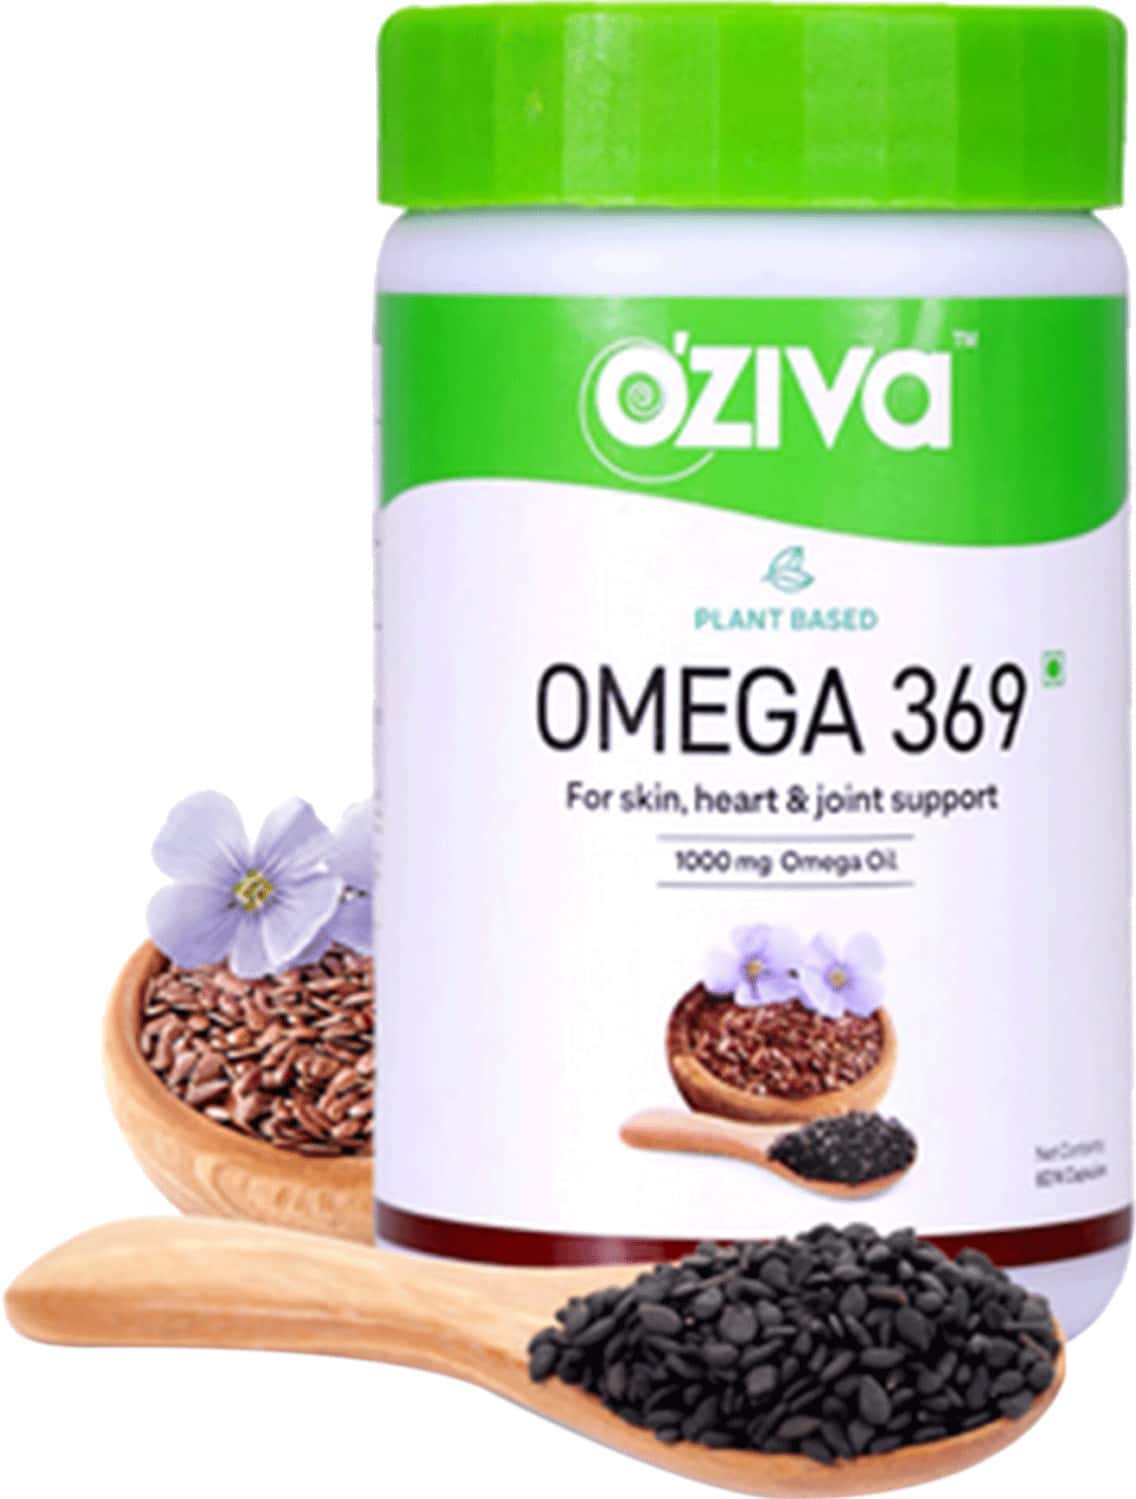 Oziva Plant Based Omega 369 Capsules For Skin Heart & Joint Support 60 Capsules